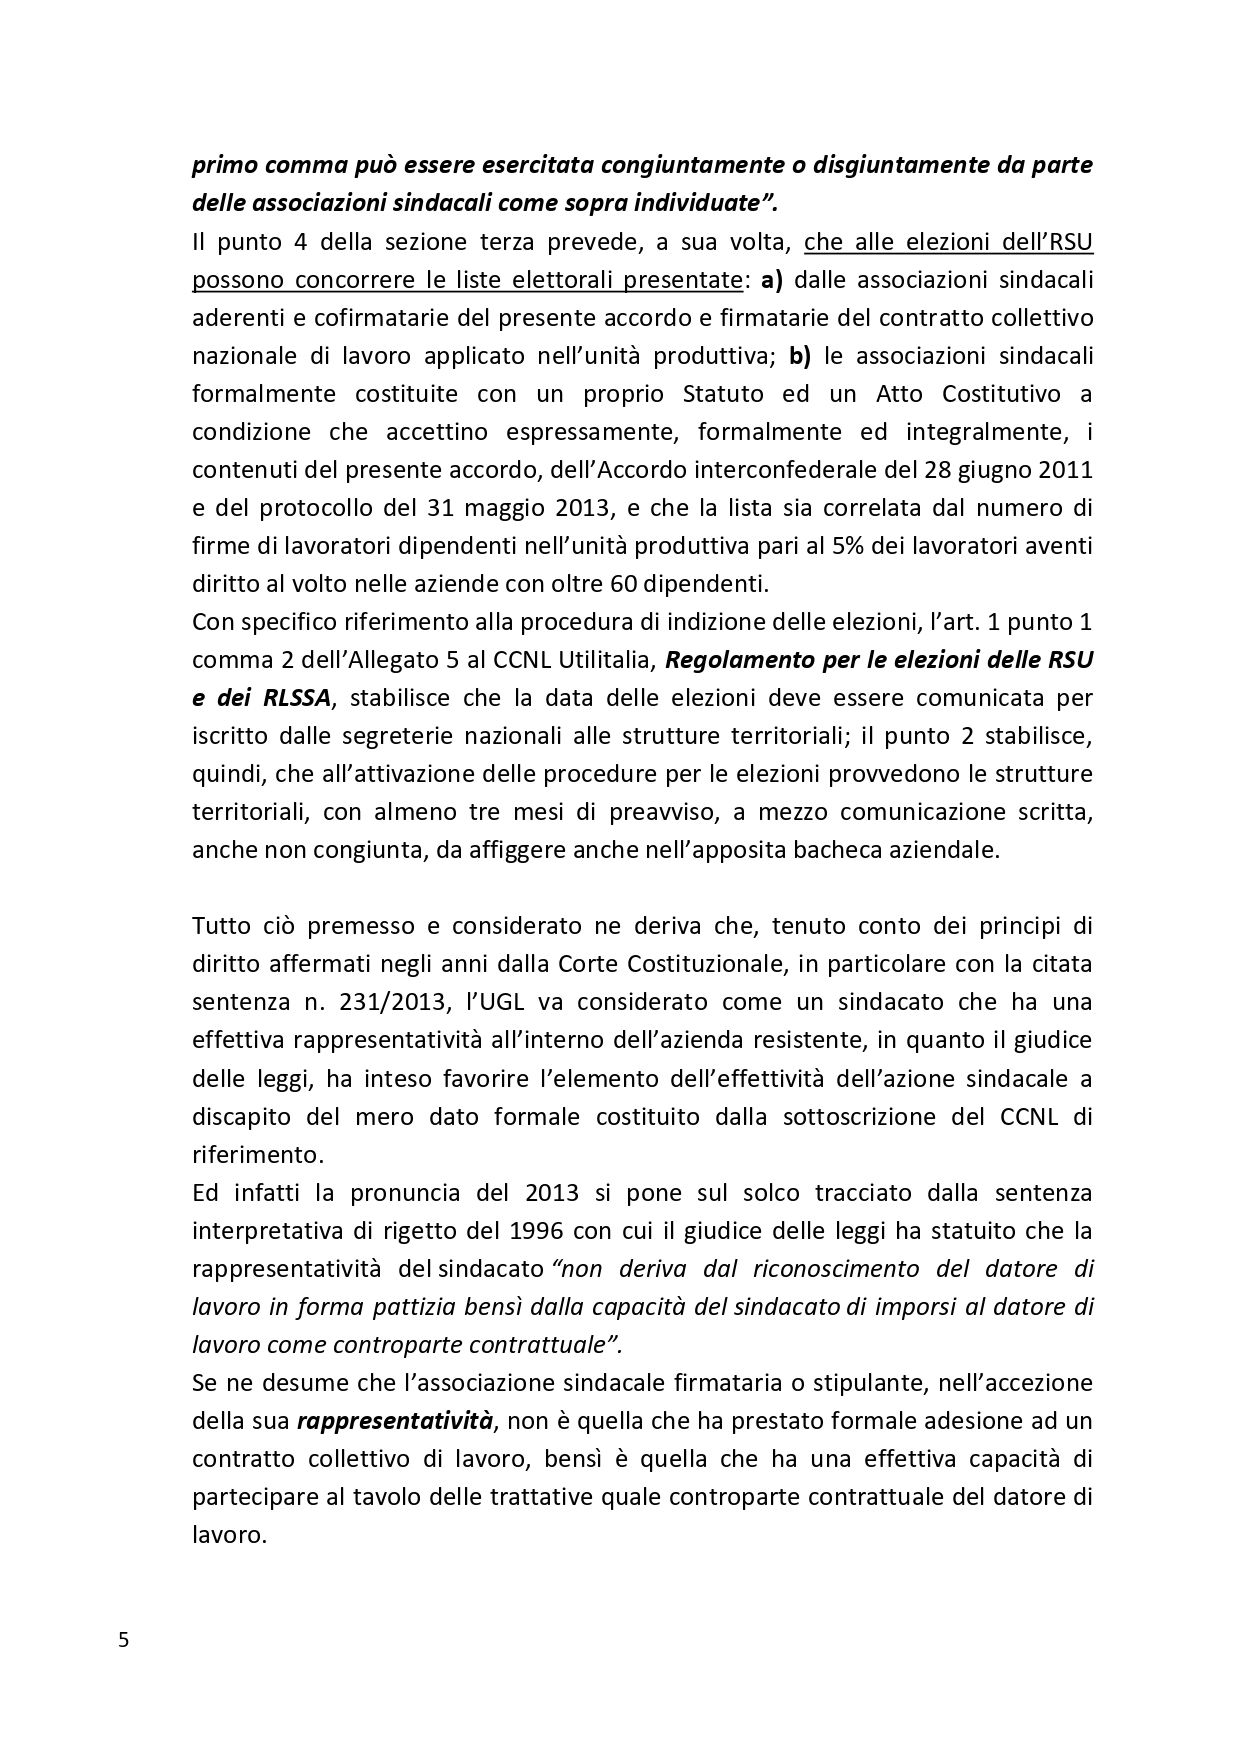 Decreto UGL Ambiente 1 page 0005